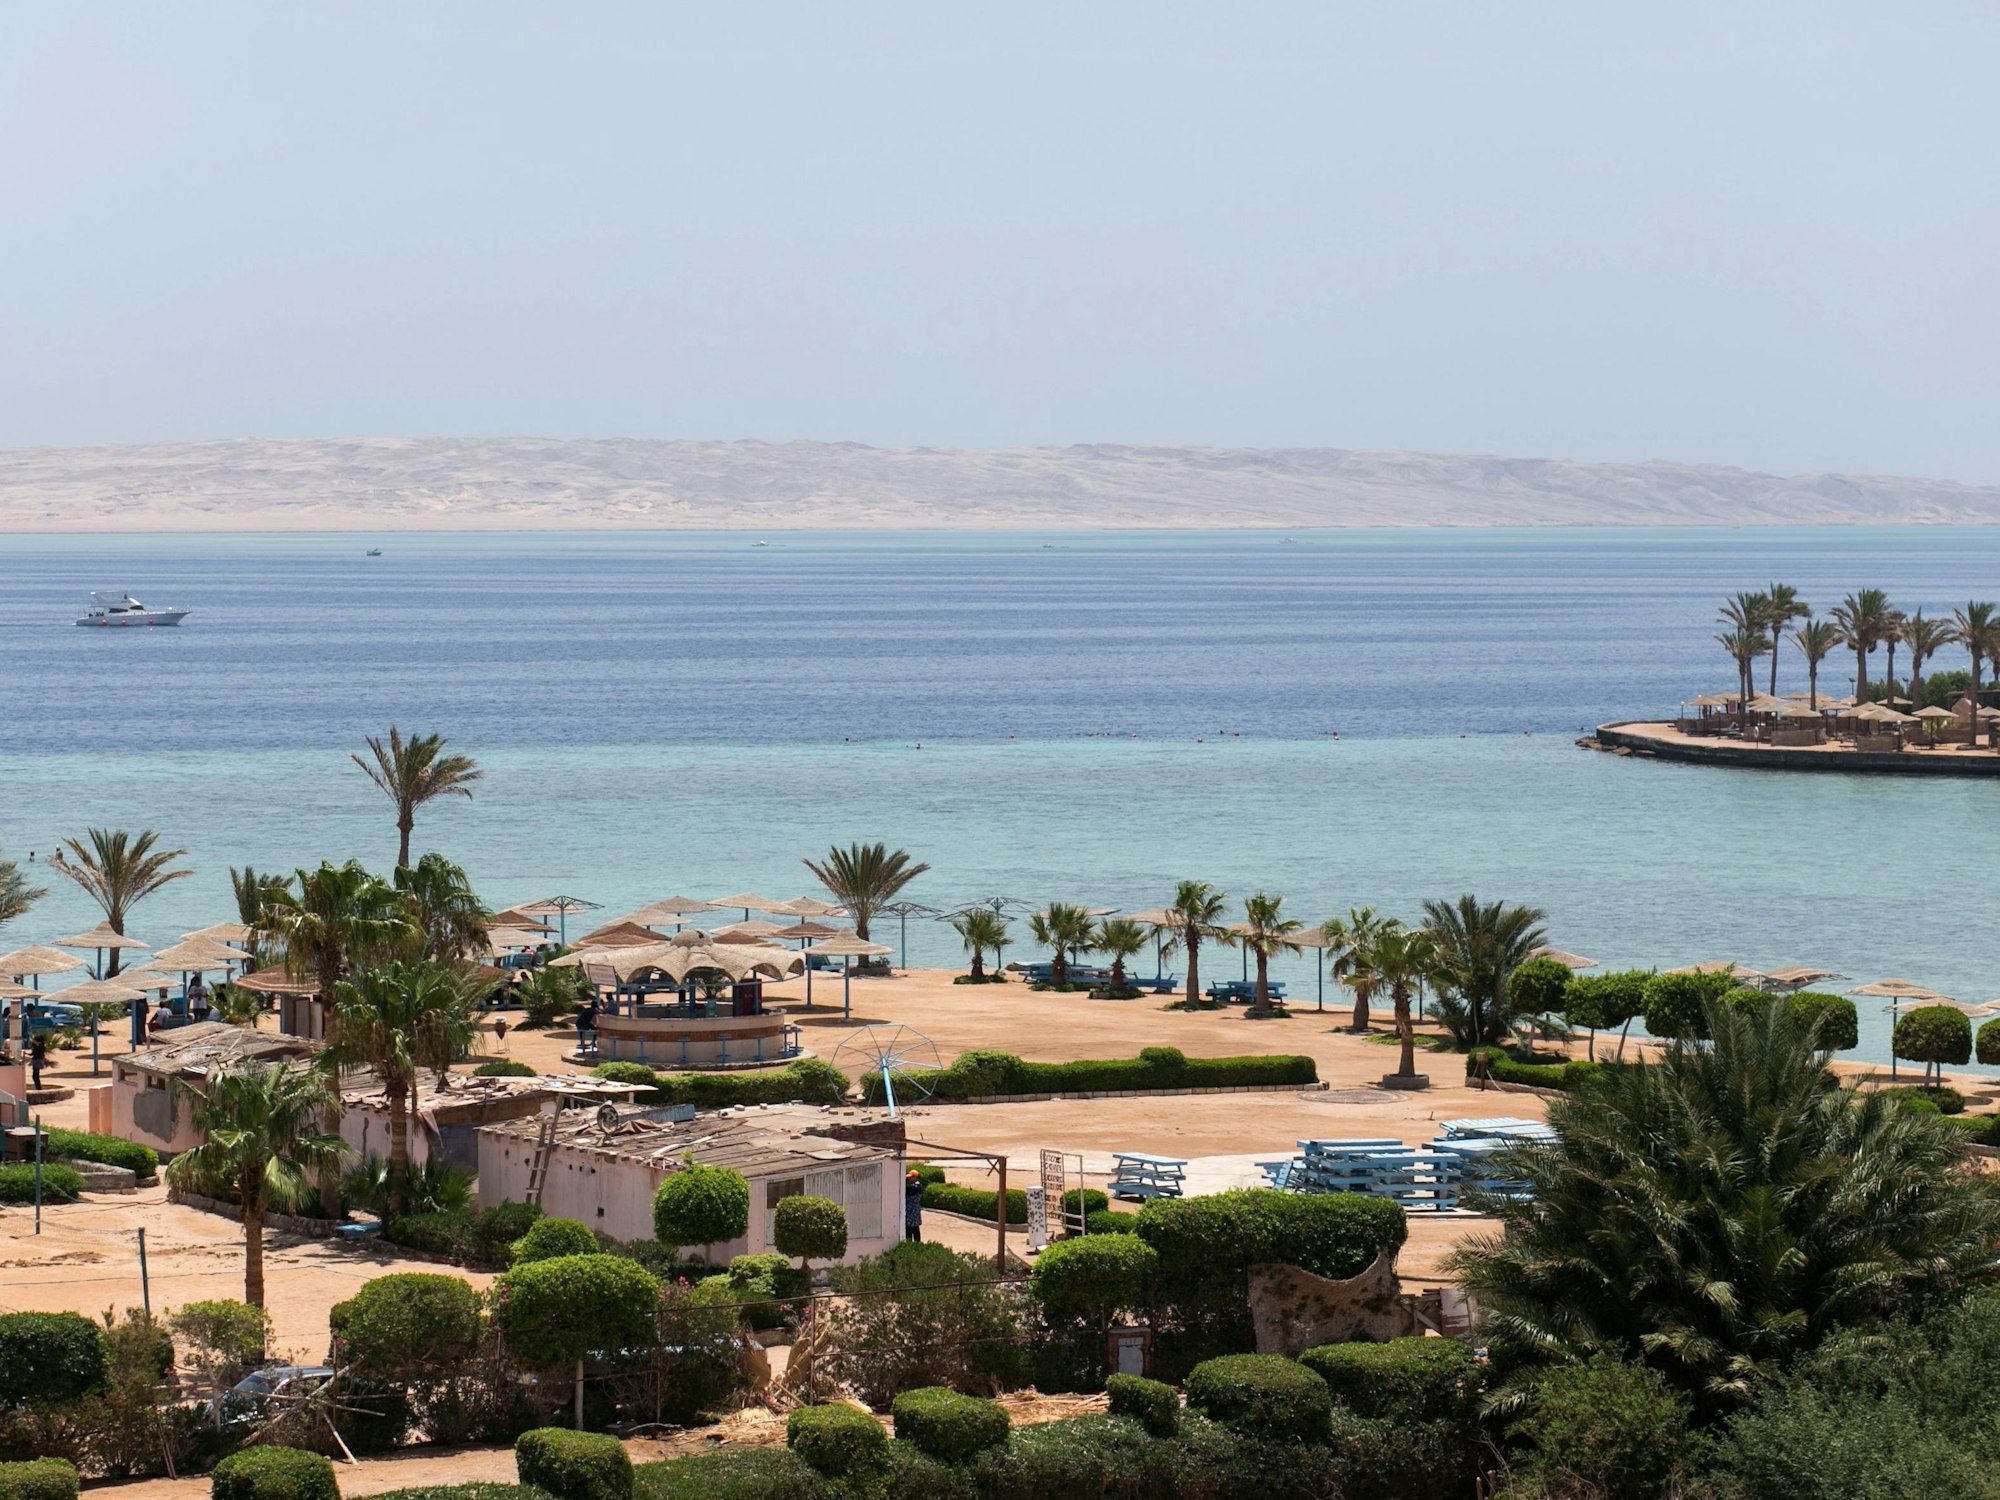 Blick über das Meer und die Hotelanlagen in Hurghada, Ägypten, am 15.07.2017.